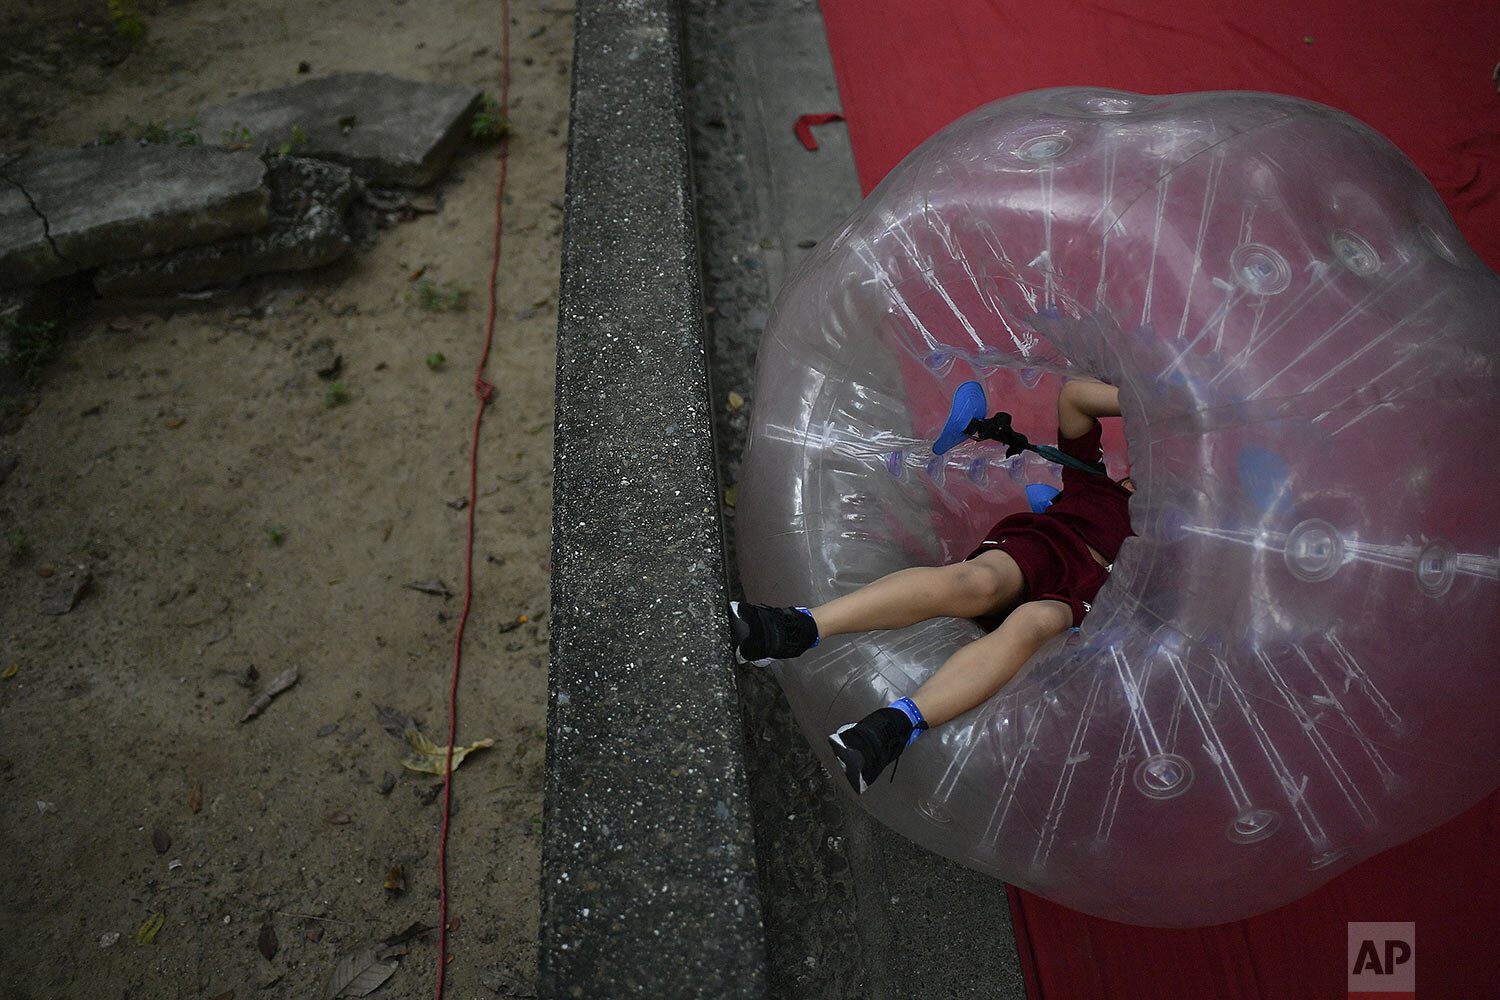  A boy plays inside a large inflatable bubble at Los Caobos public park in Caracas, Venezuela, Sunday, Nov. 8, 2020. (AP Photo/Matias Delacroix) 